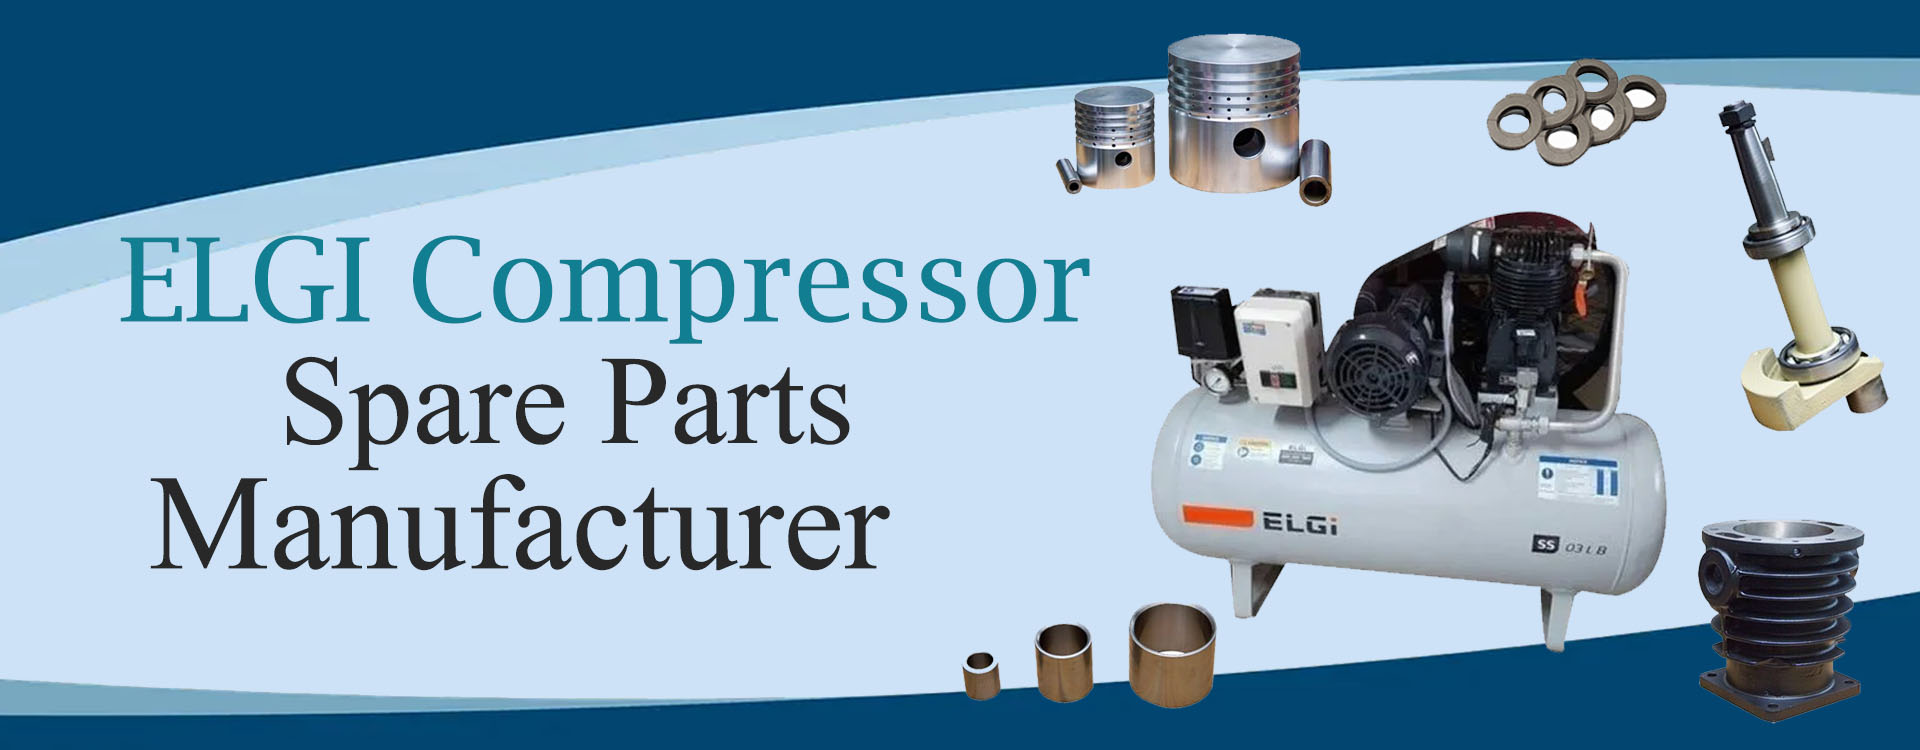 Elgi Compressor Part Manufacturer In india